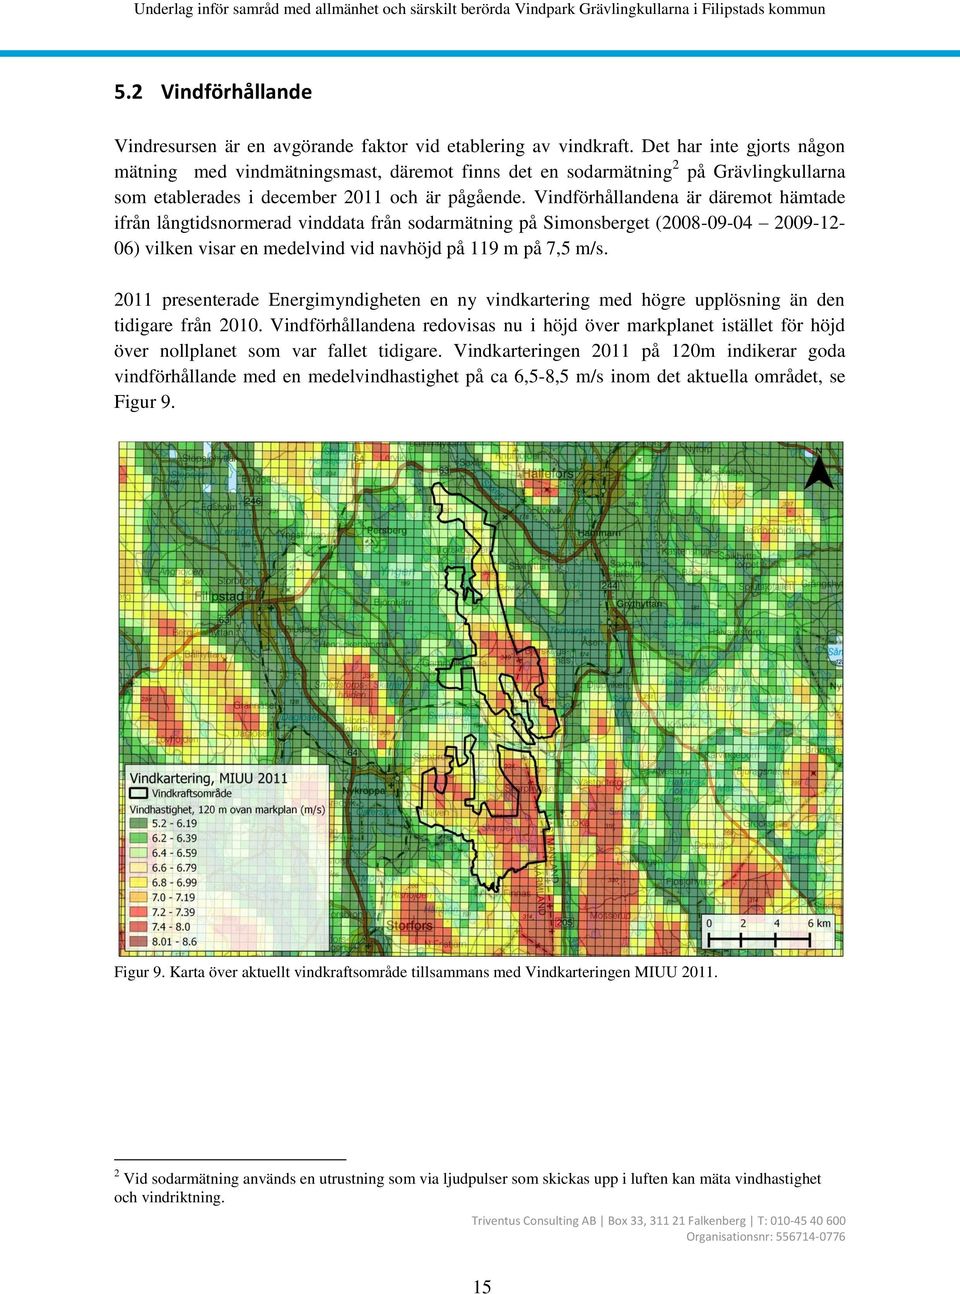 Vindförhållandena är däremot hämtade ifrån långtidsnormerad vinddata från sodarmätning på Simonsberget (2008-09-04 2009-12- 06) vilken visar en medelvind vid navhöjd på 119 m på 7,5 m/s.